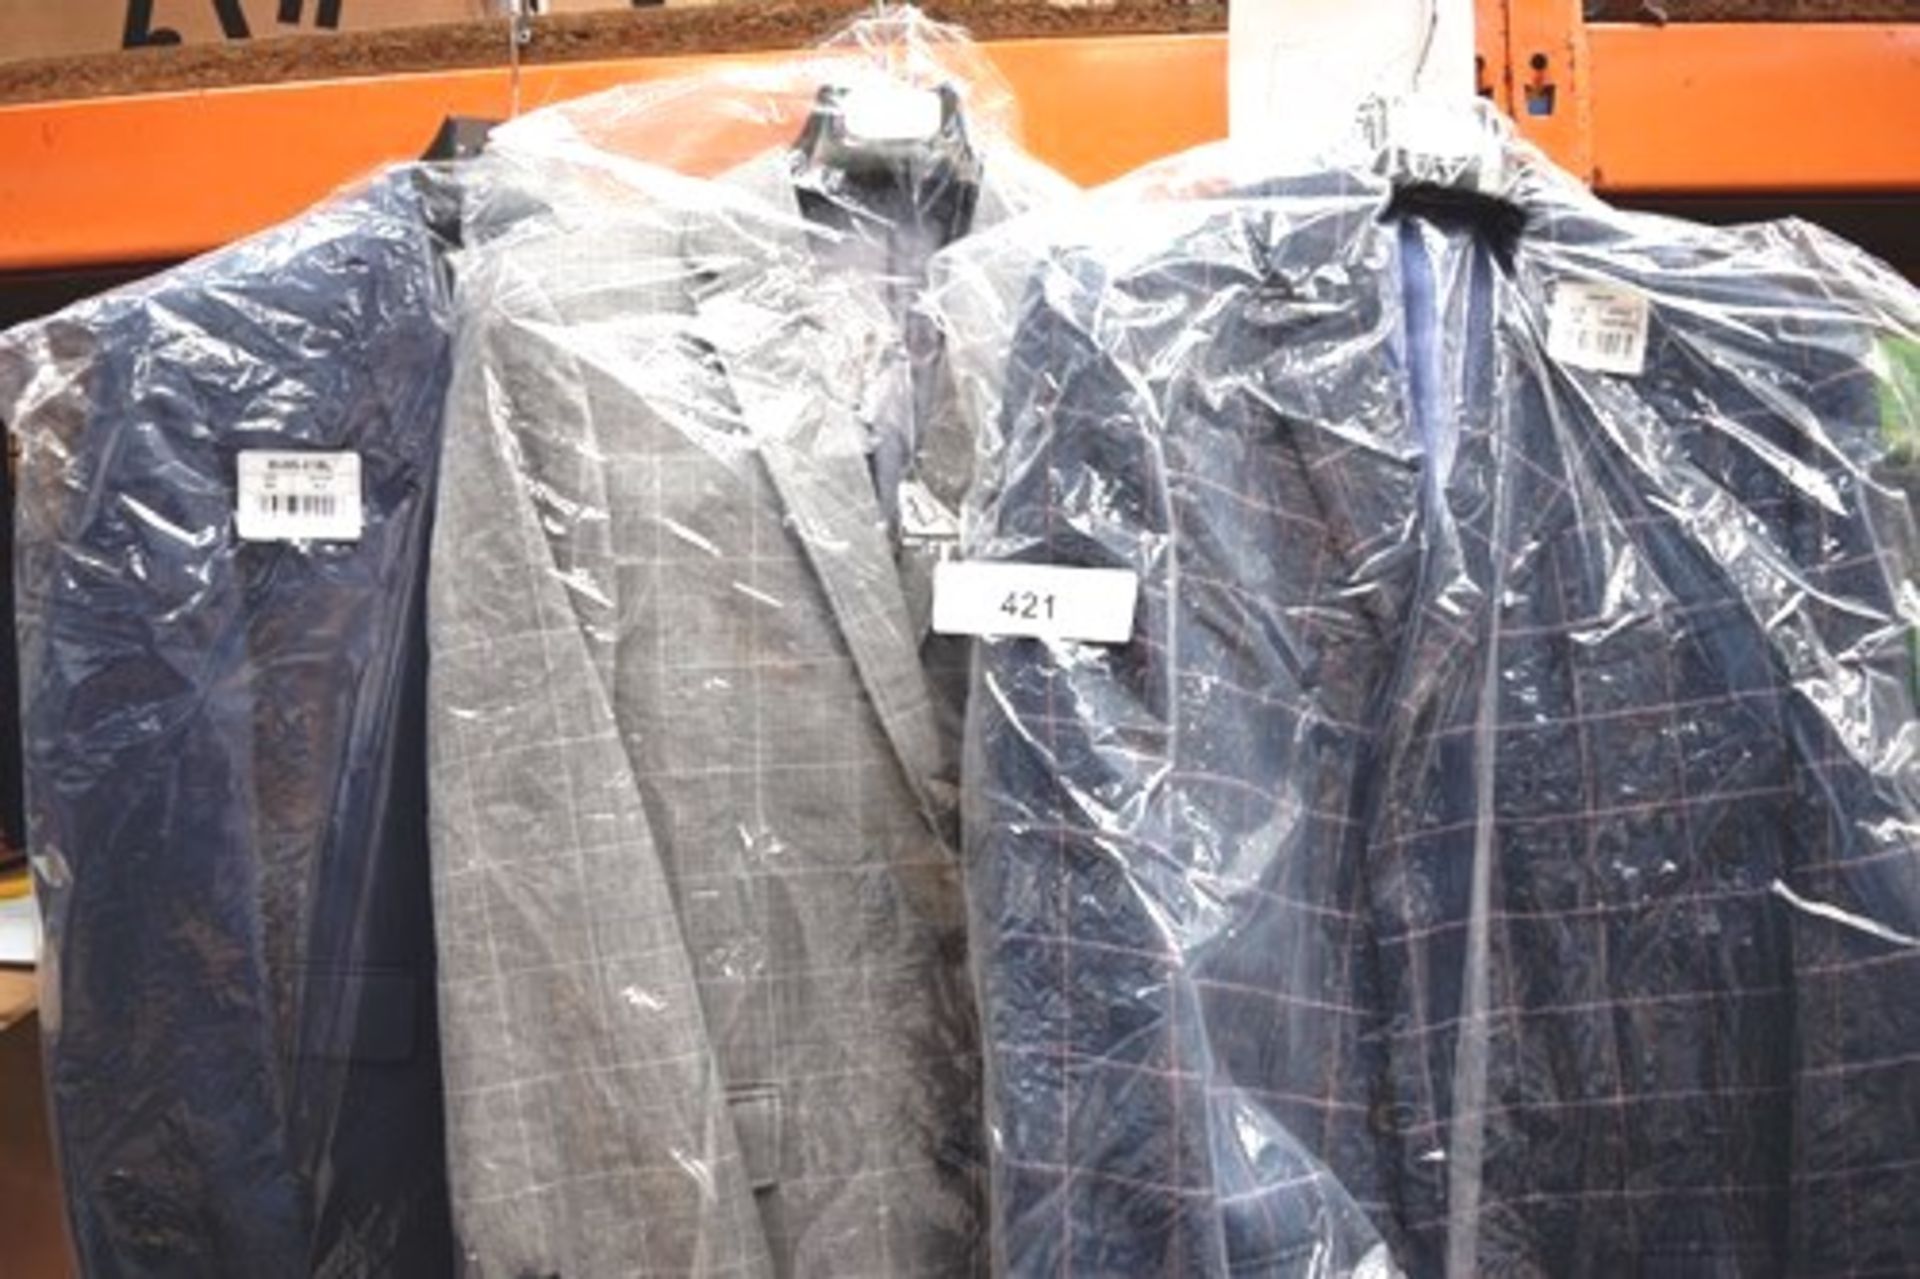 3 x Samuel Windsor men's coat/jackets, comprising 1 x linen suit jacket, size 38S, 1 x summer